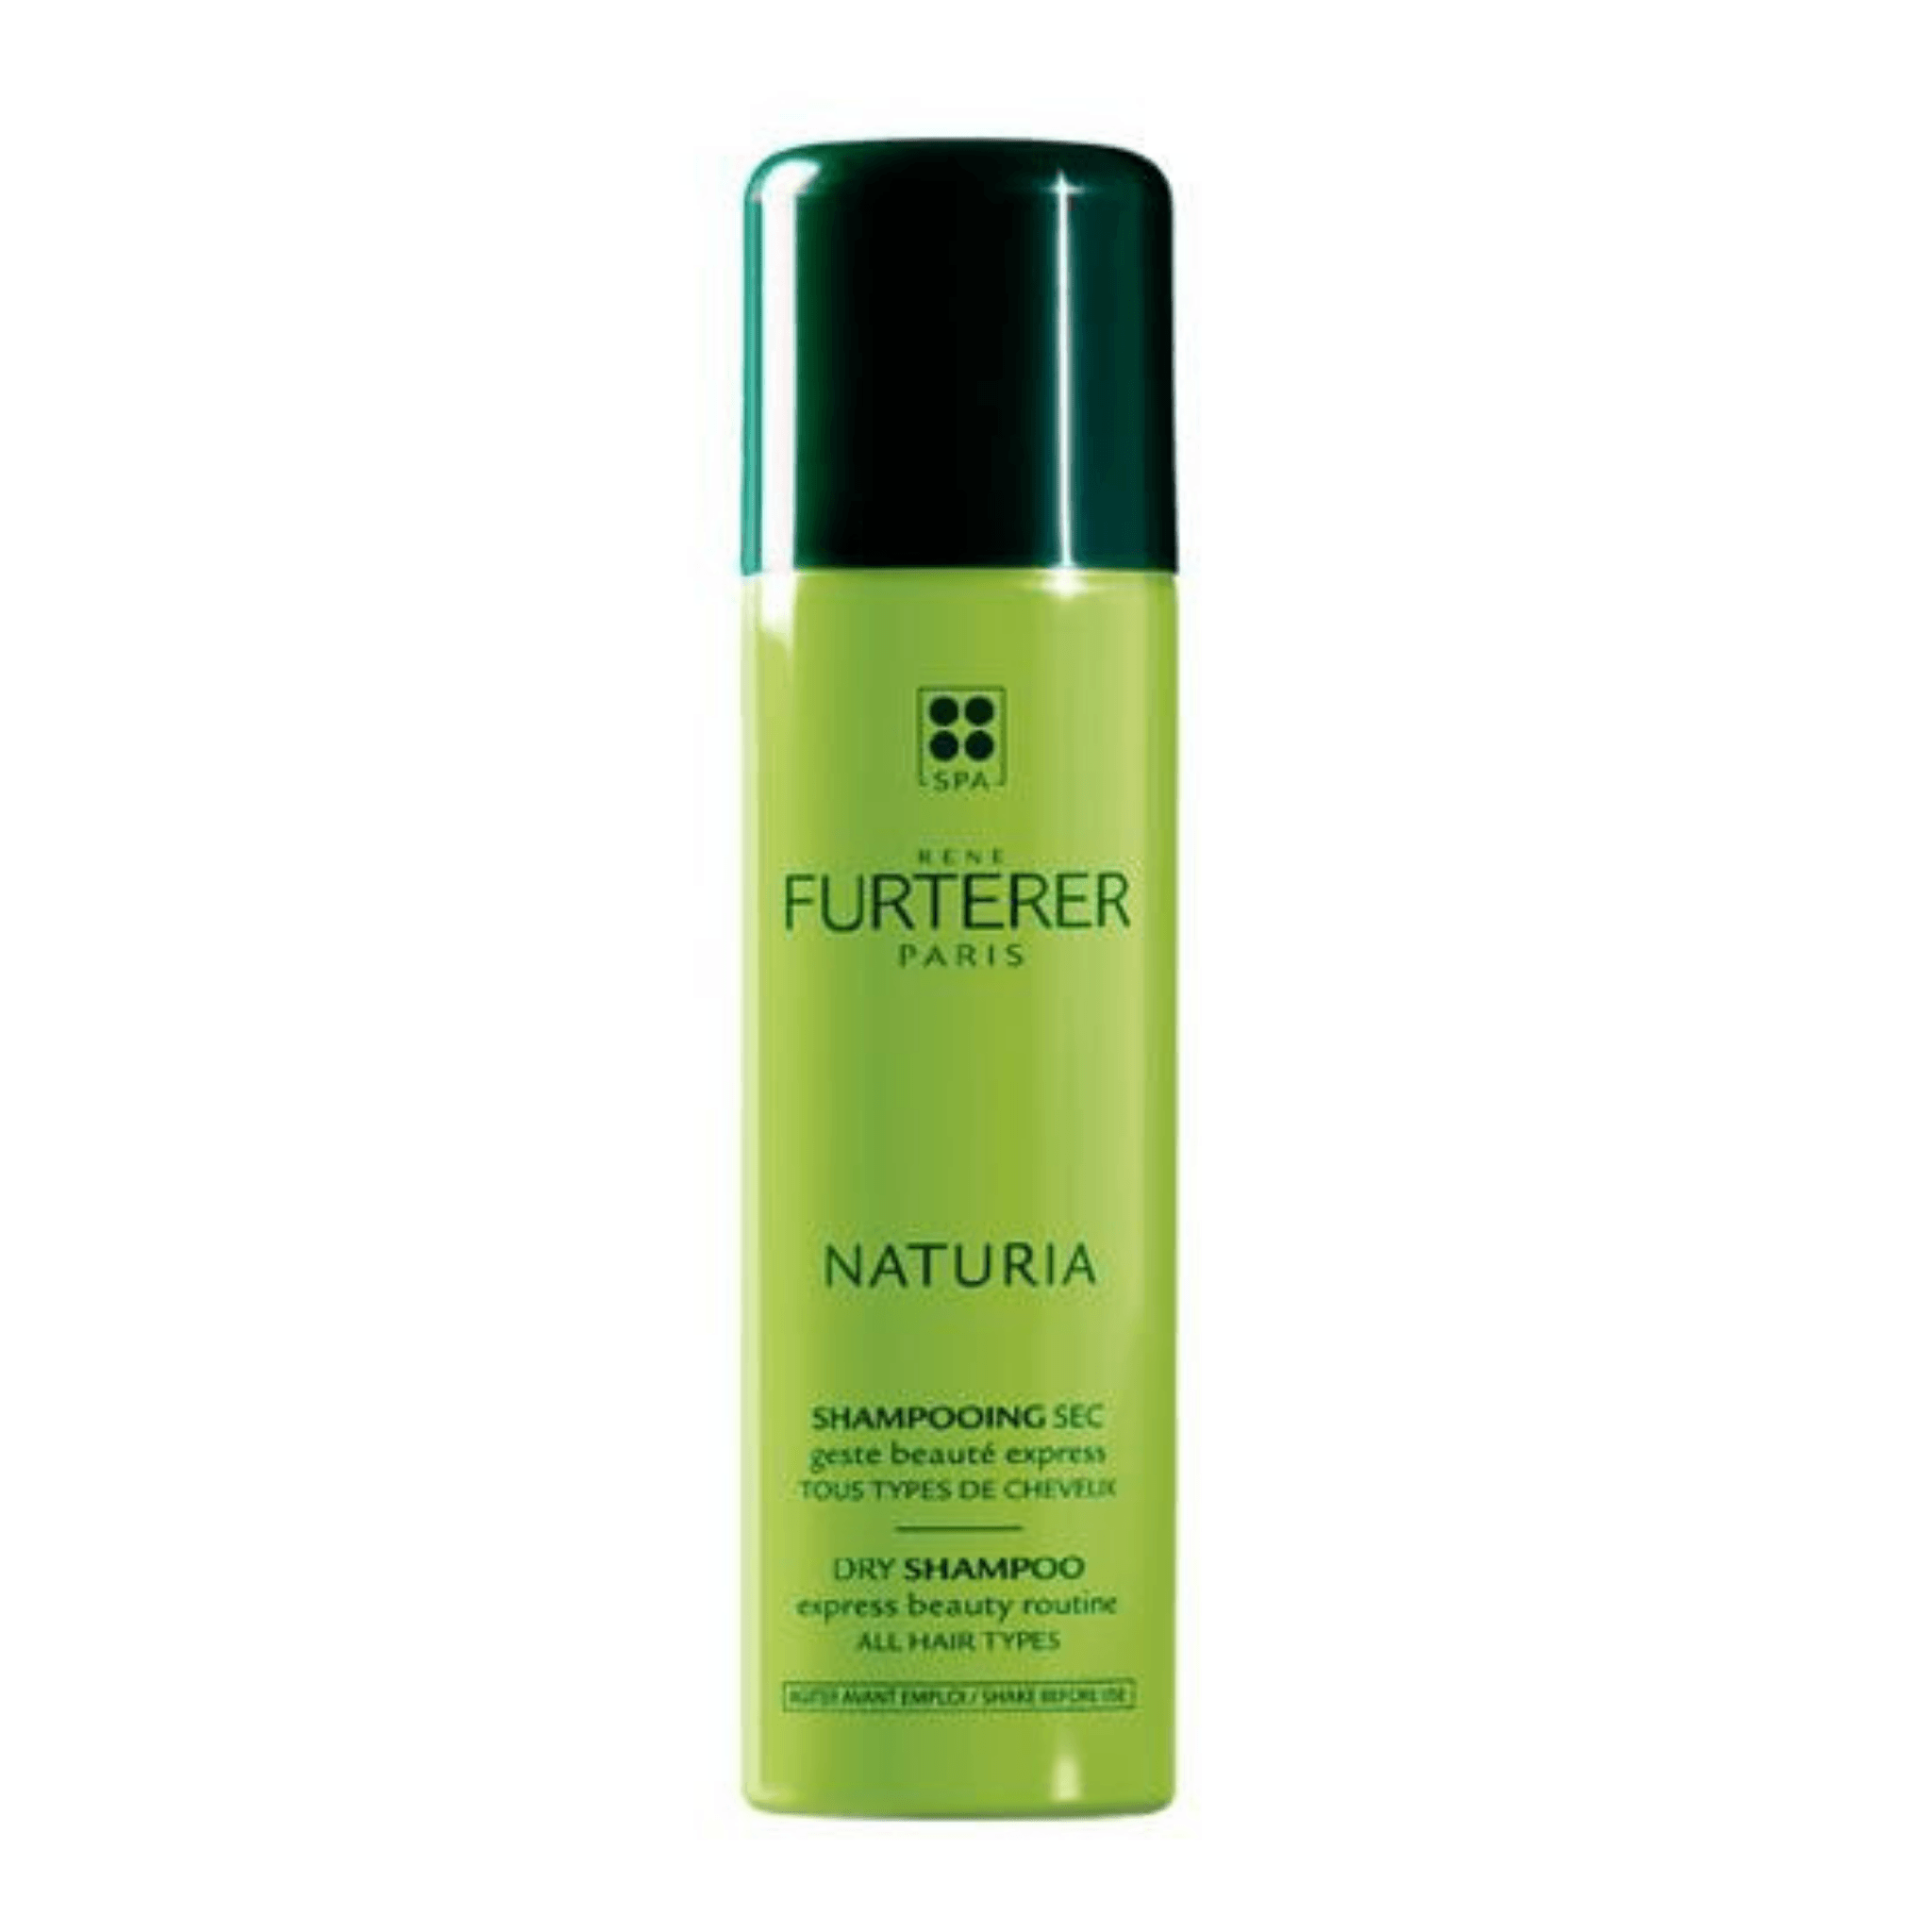 René Furterer. Naturia Shampoing Sec Fraîcheur Instantanée et Texture - 75 ml - Concept C. Shop